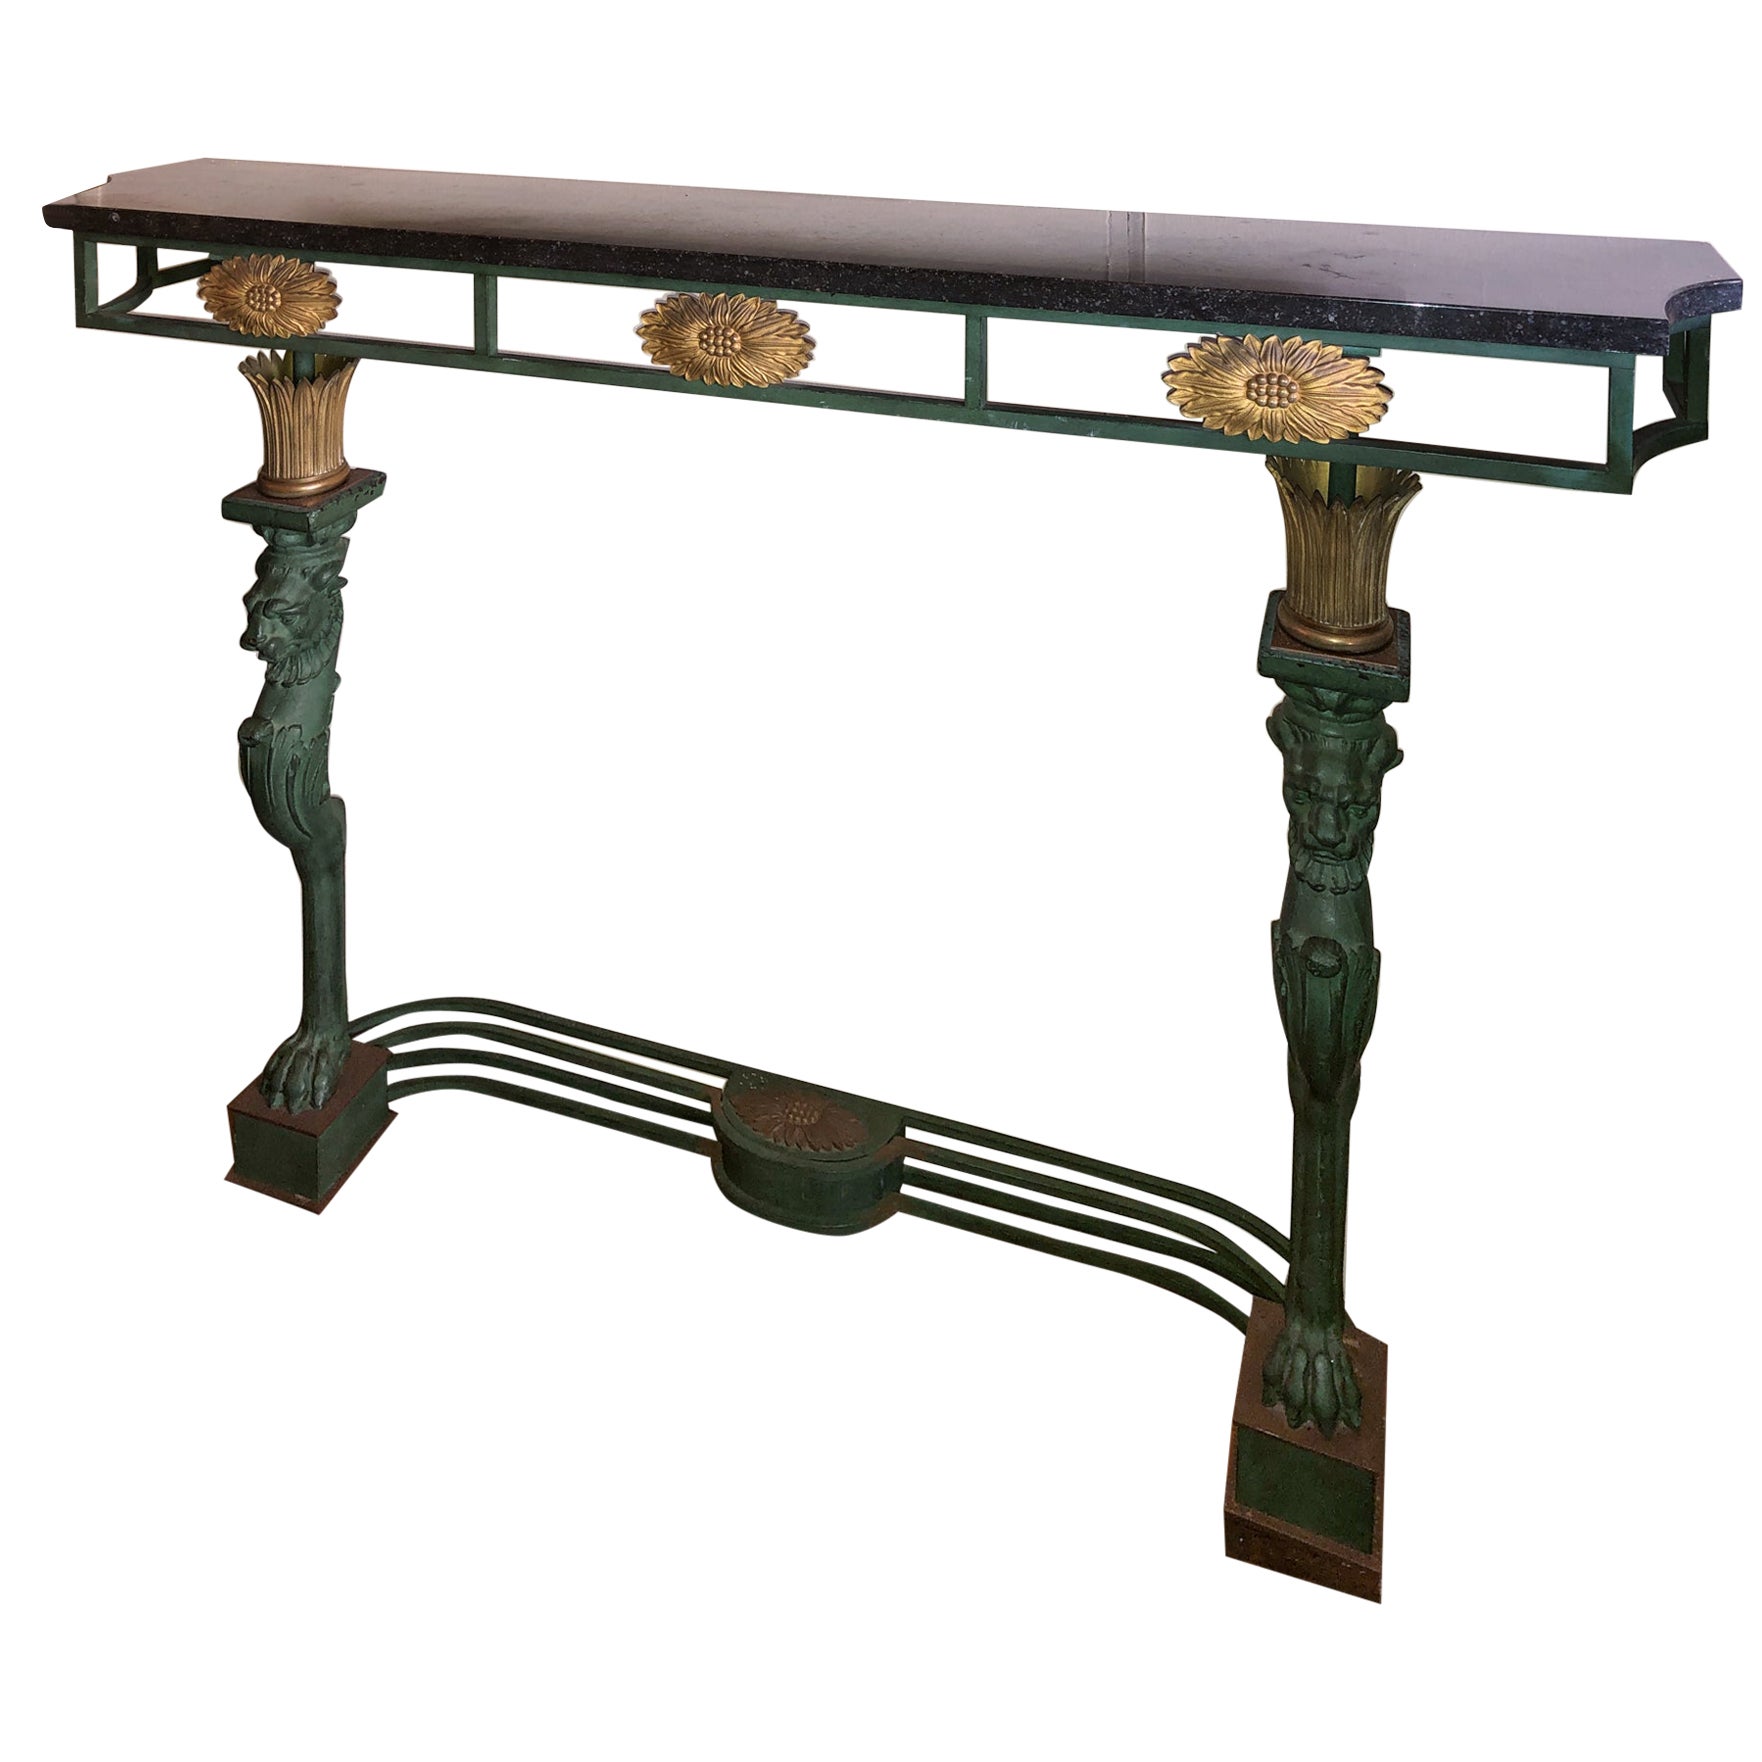 Table console néoclassique française de style Directoire avec plateau en marbre et bronze doré